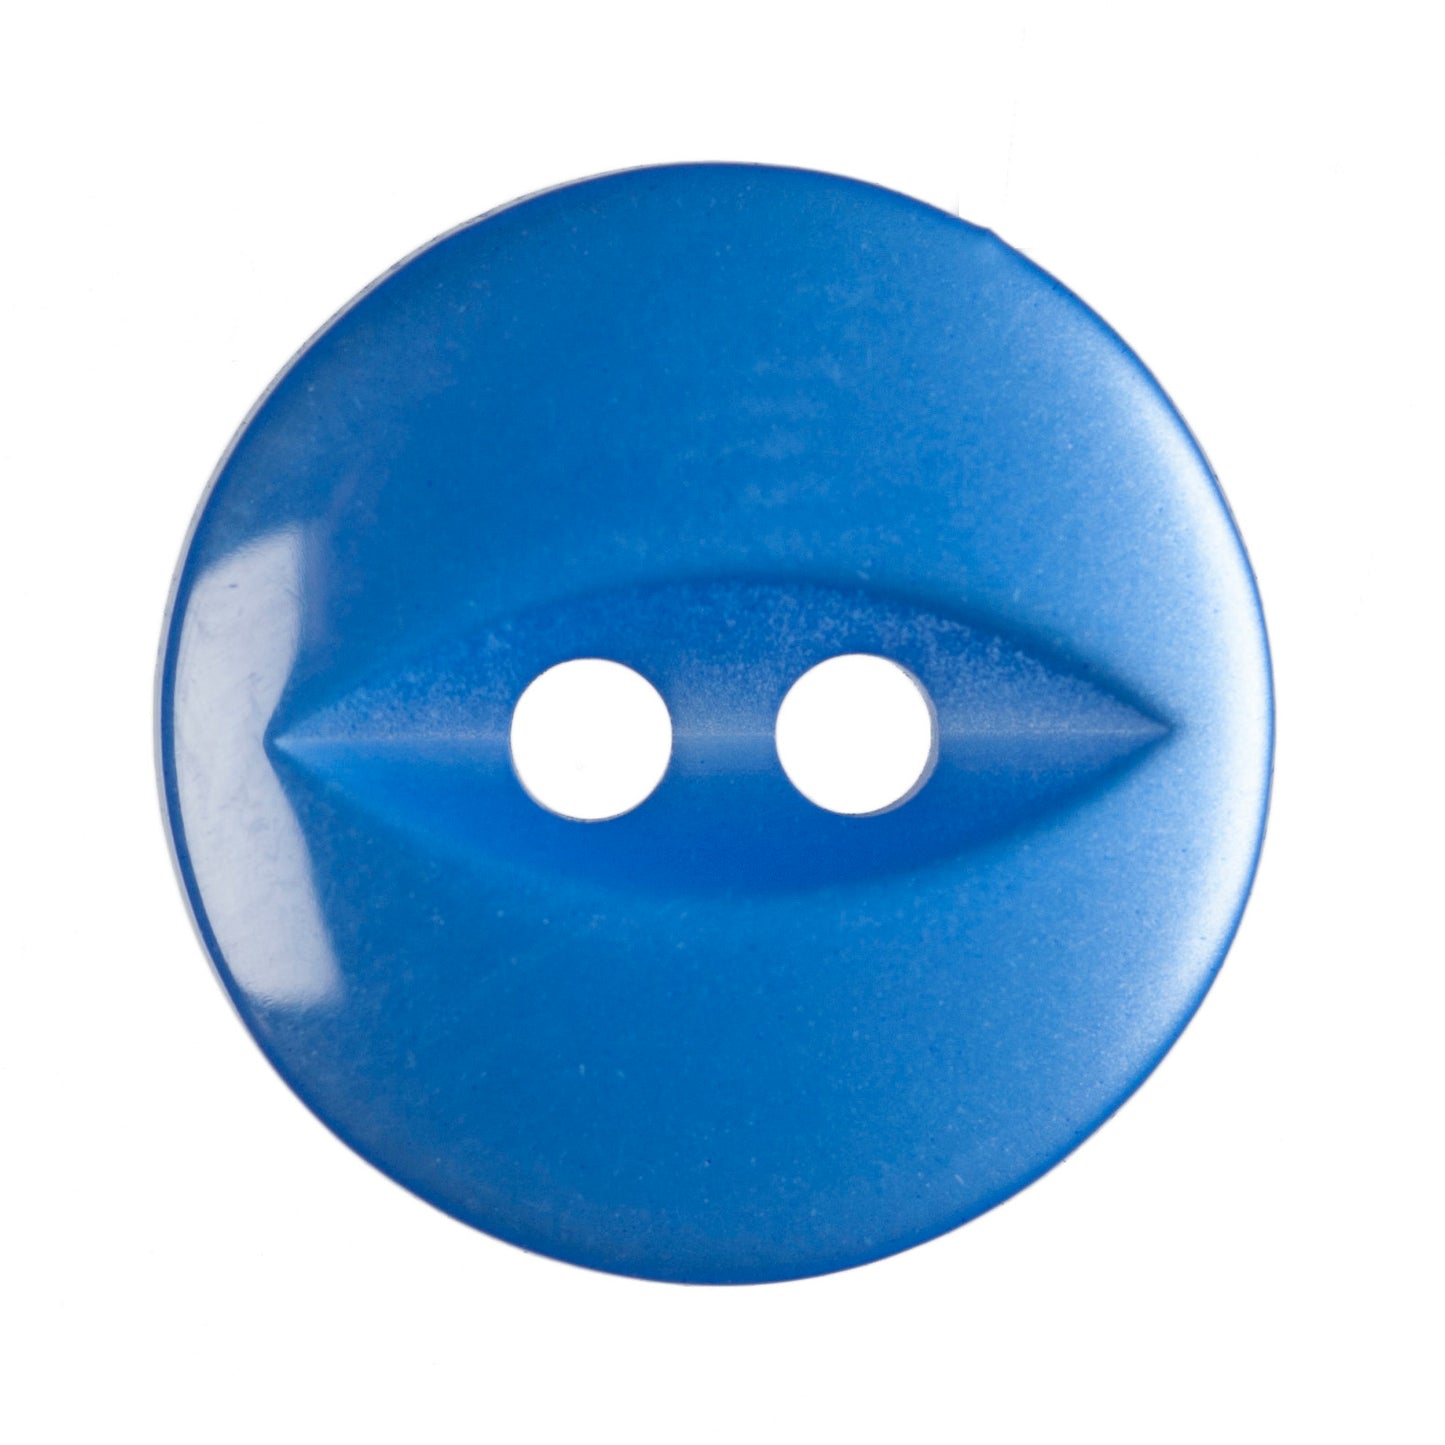 Fisheye Buttons - 14mm